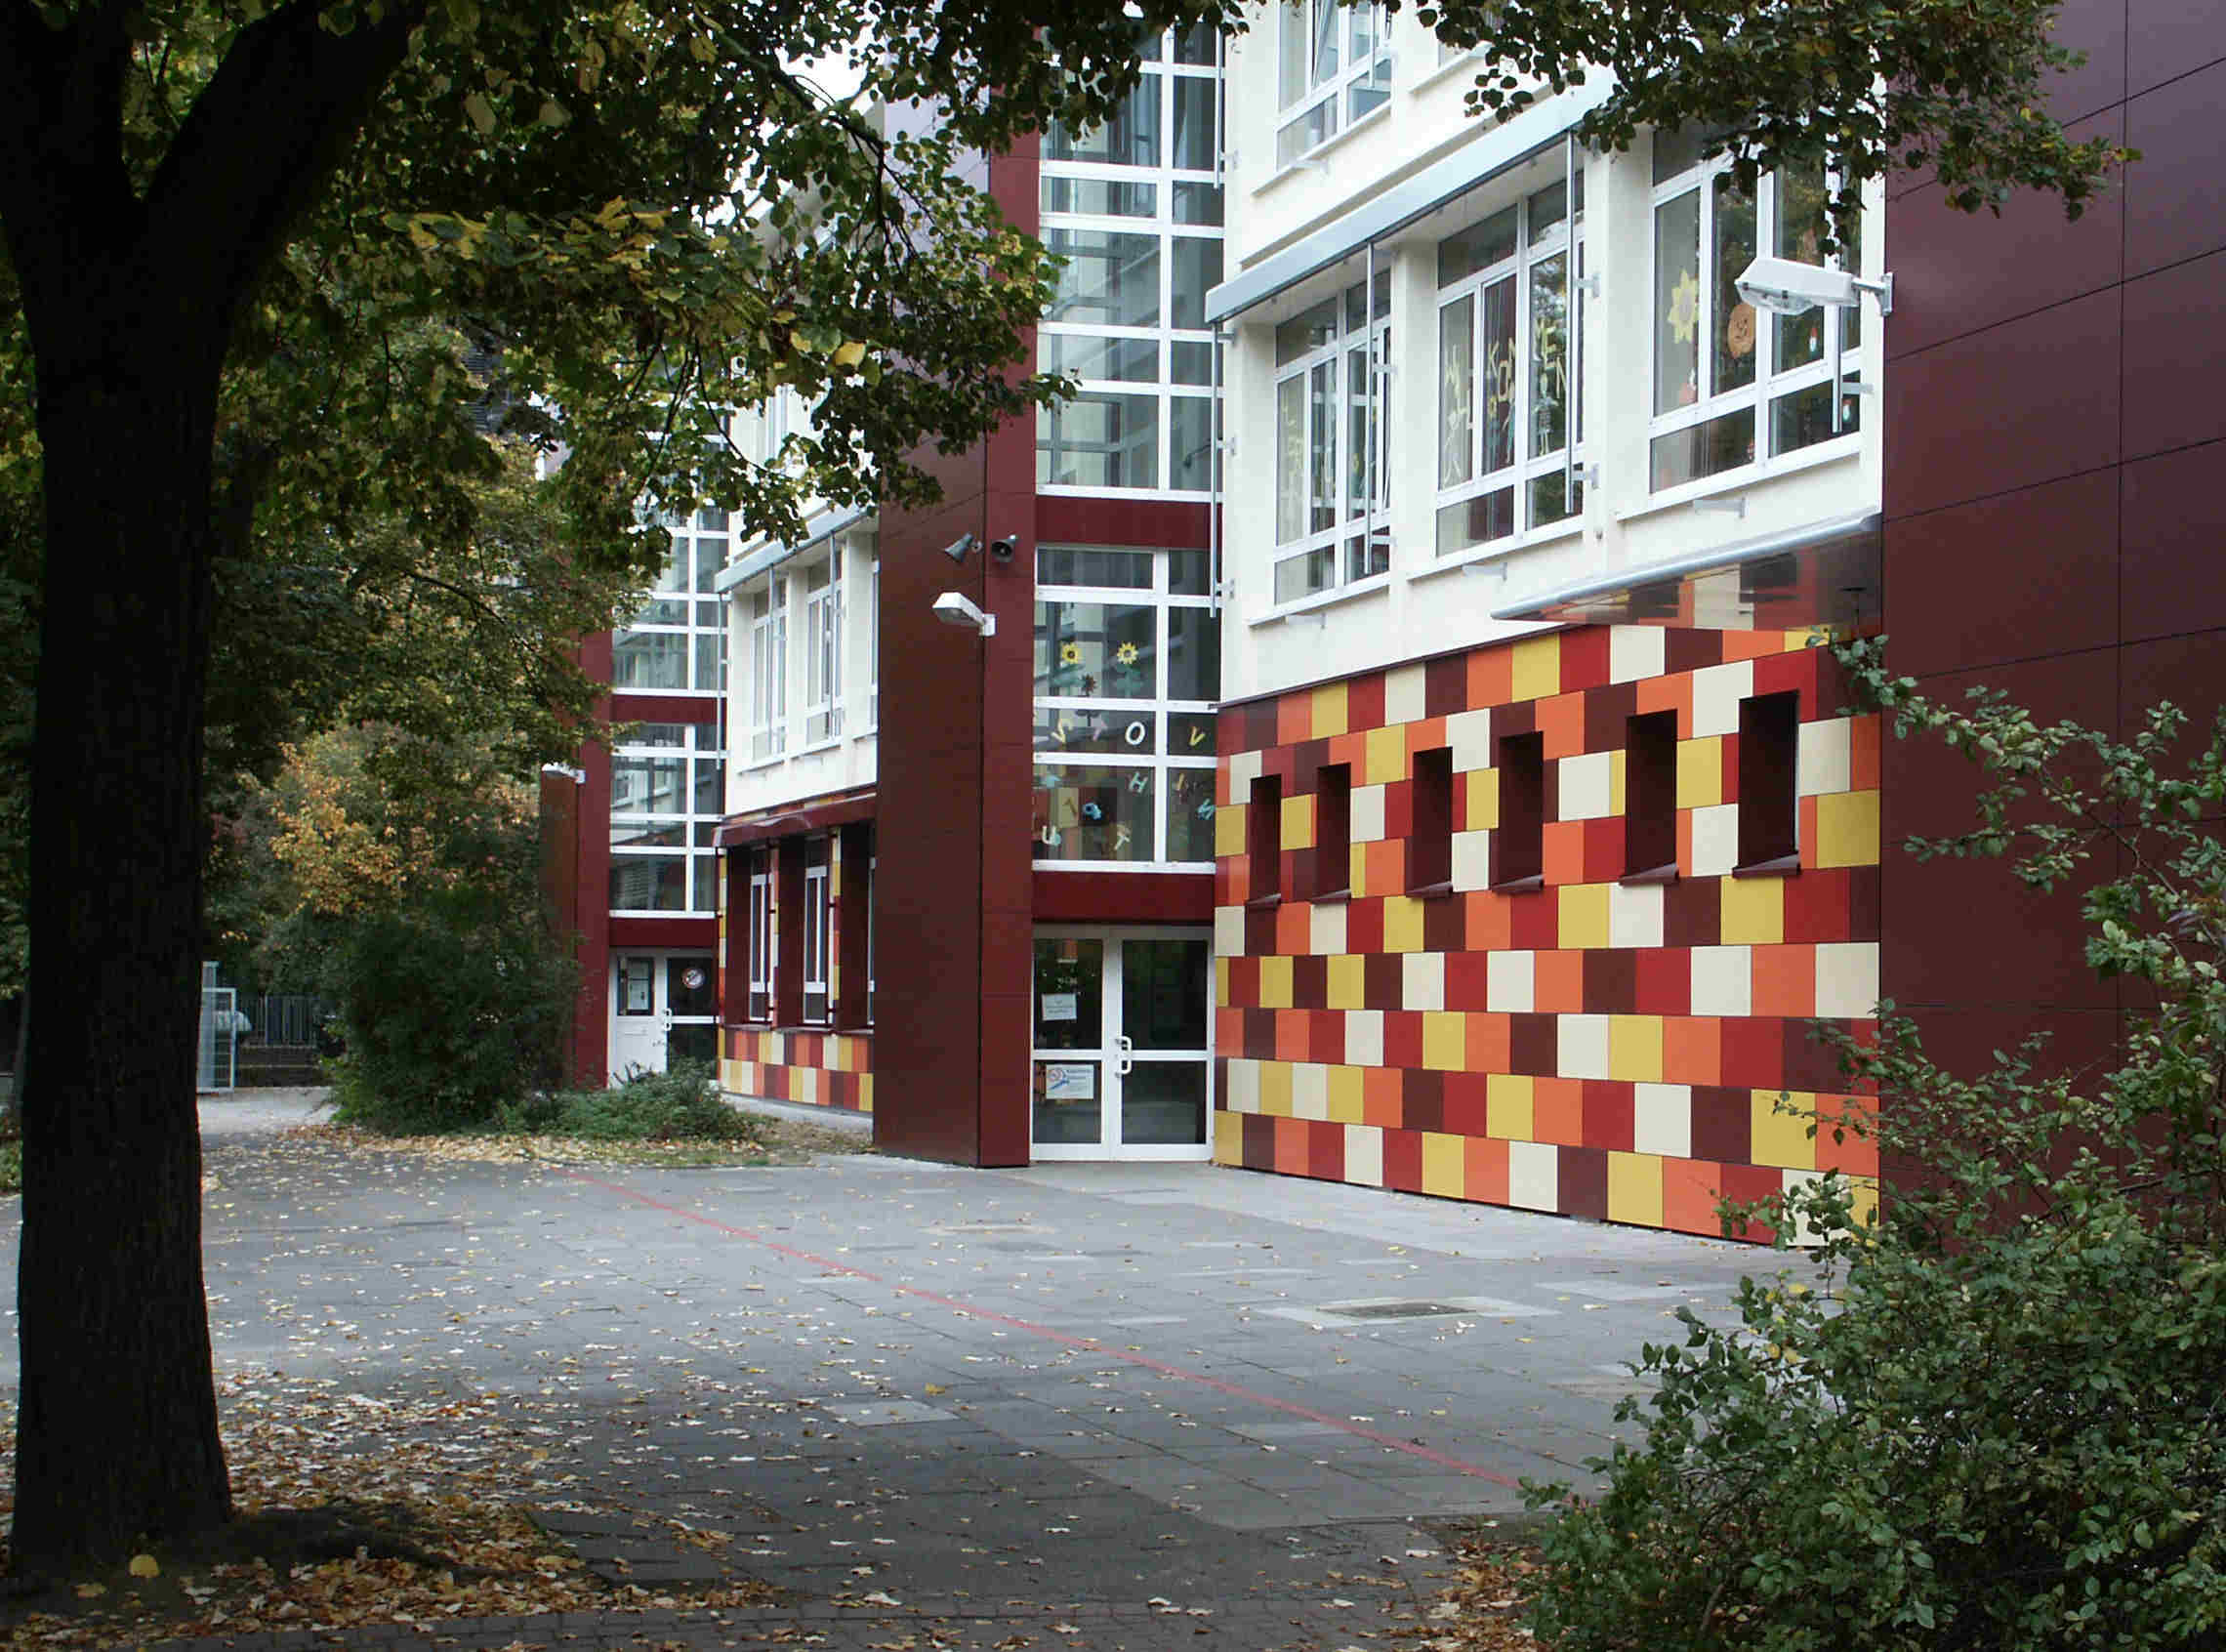 Katholische Grundschule Grabenstraße